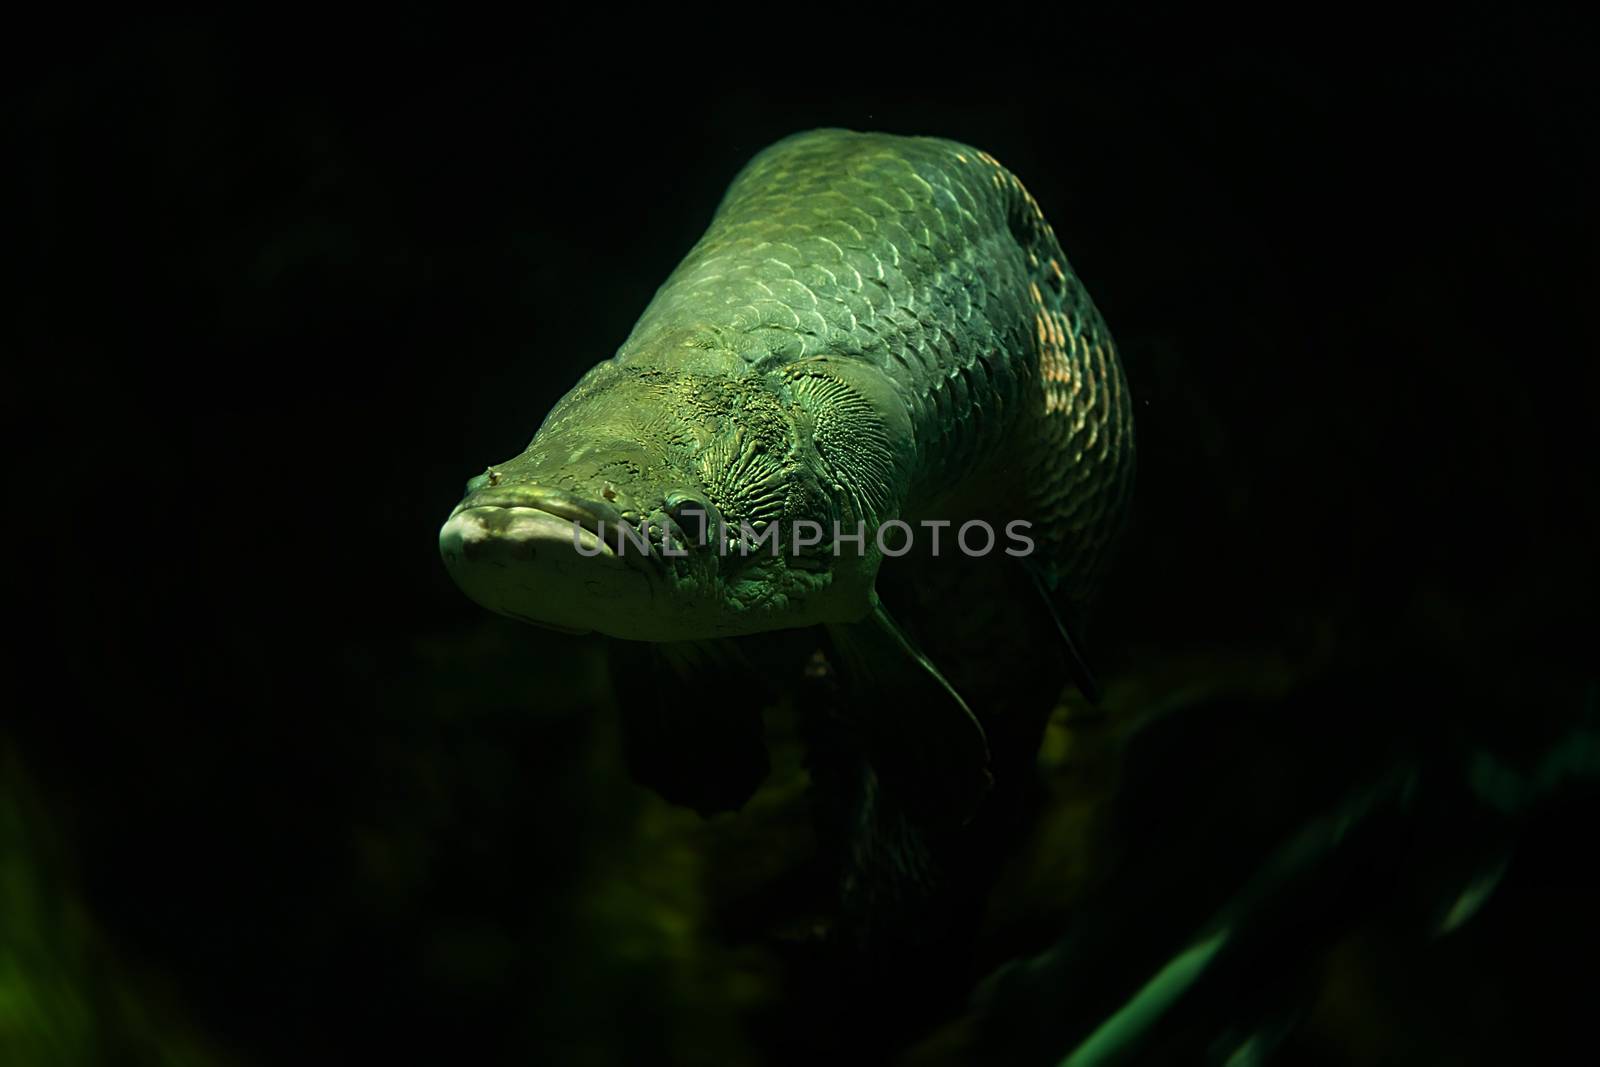 Arapaima fish in aquarium, Singapore